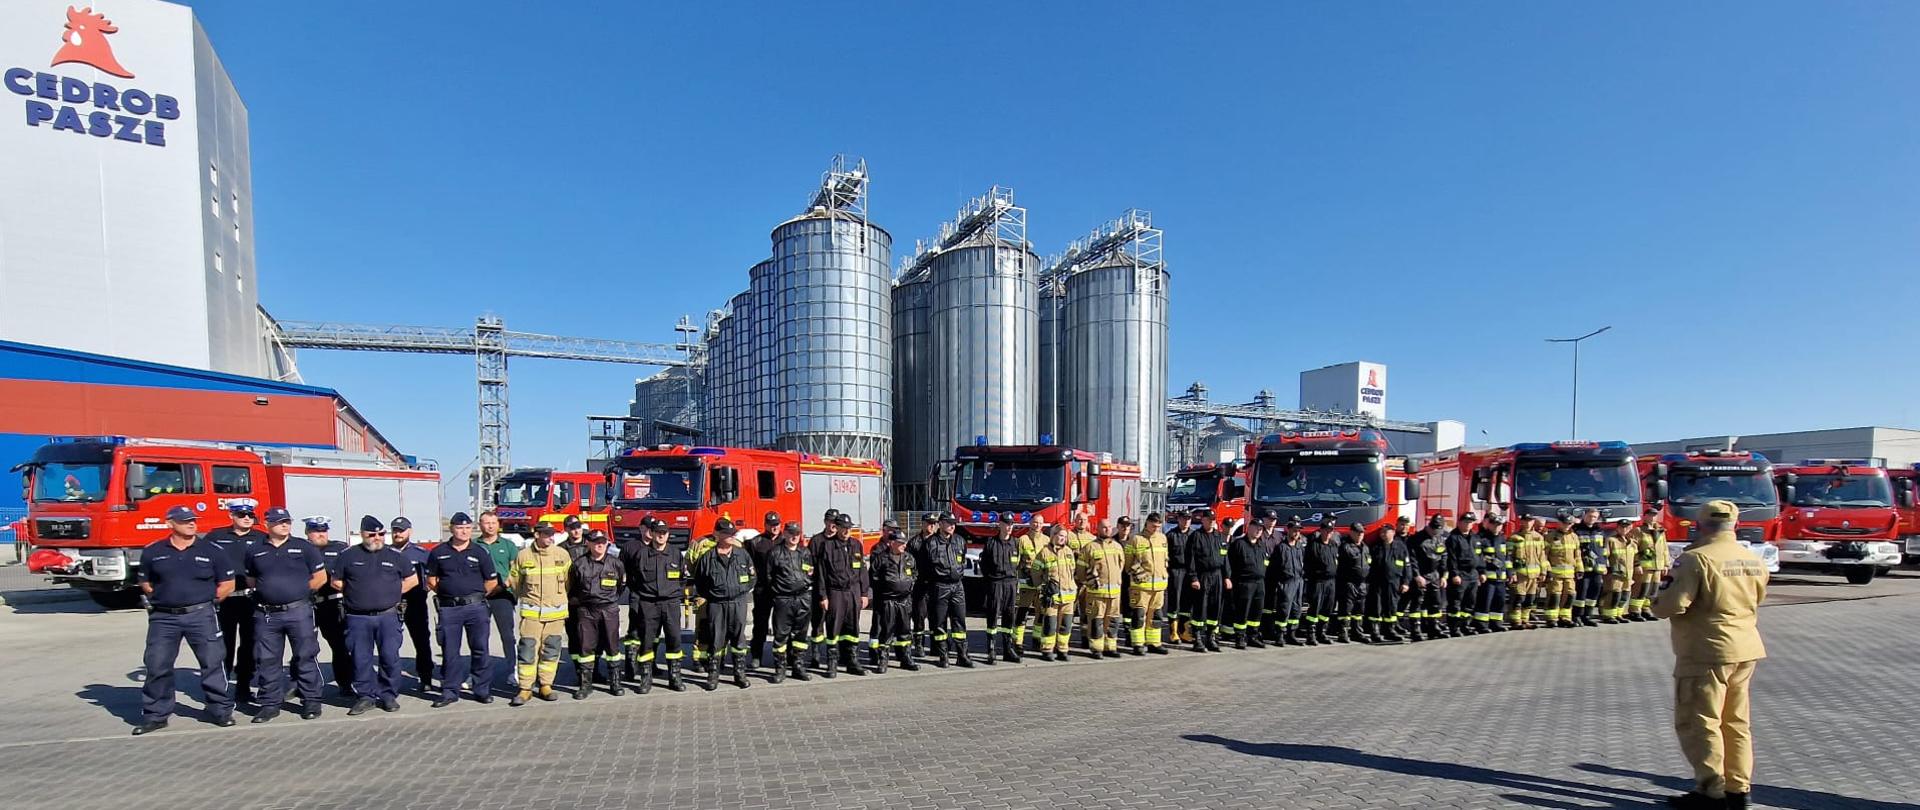 Na zdjęciu widzimy zbiórkę strażaków biorących udział w ćwiczeniach CEDROB 20023 na tle zakładu produkcyjnego Cedrob S.A.